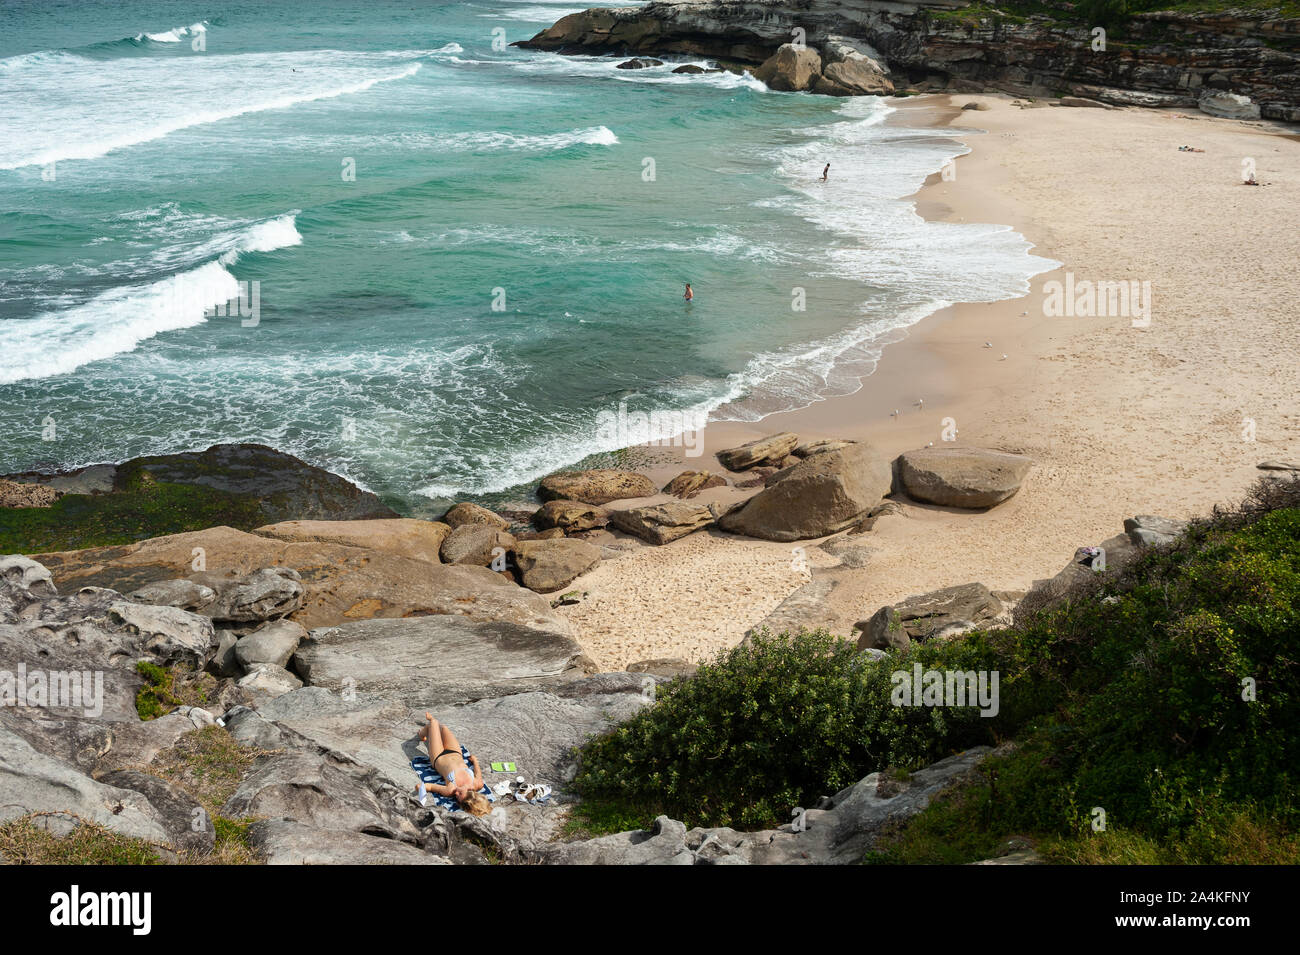 27.09.2019, Sydney, New South Wales, Australia - una mujer sunbathes en las rocas en Tamarama Beach. Foto de stock